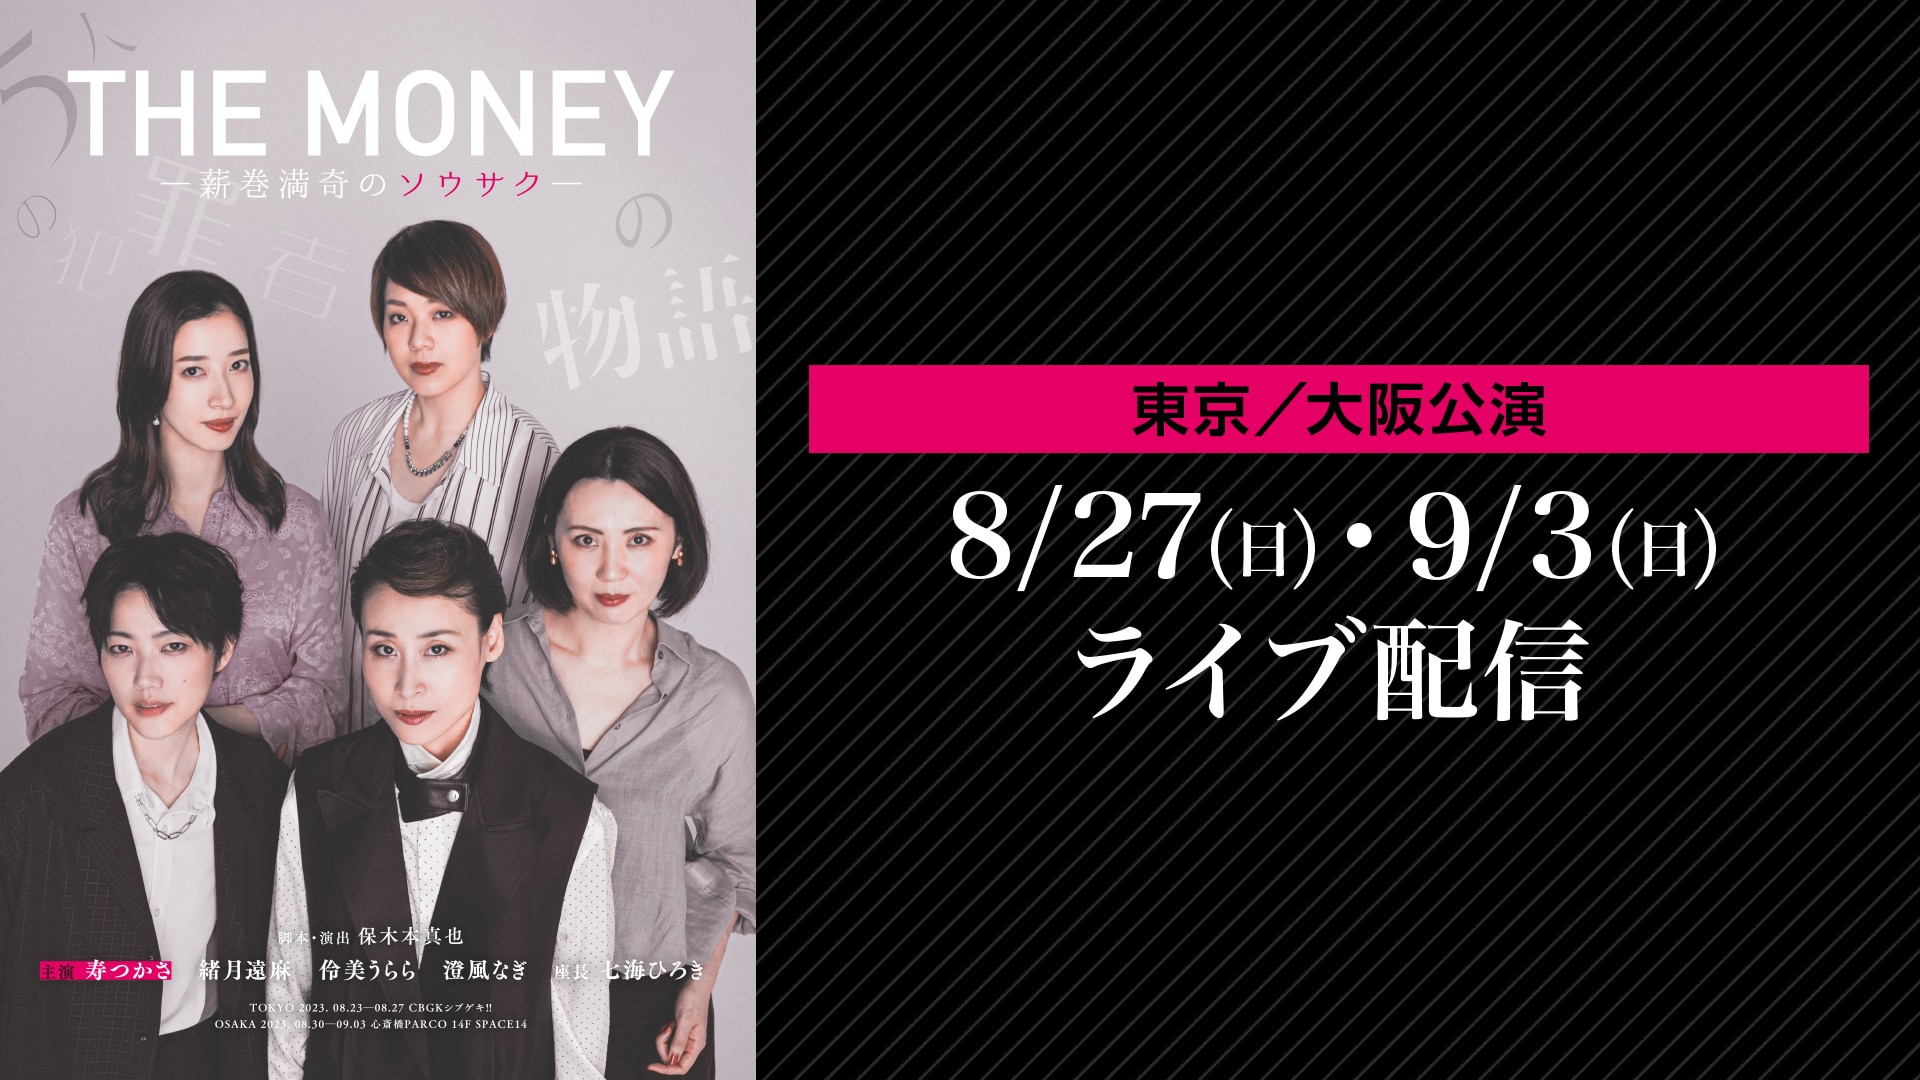 独占コメント到着！七海ひろき初プロデュース、寿つかさ初主演＆出演の舞台『THE MONEY』